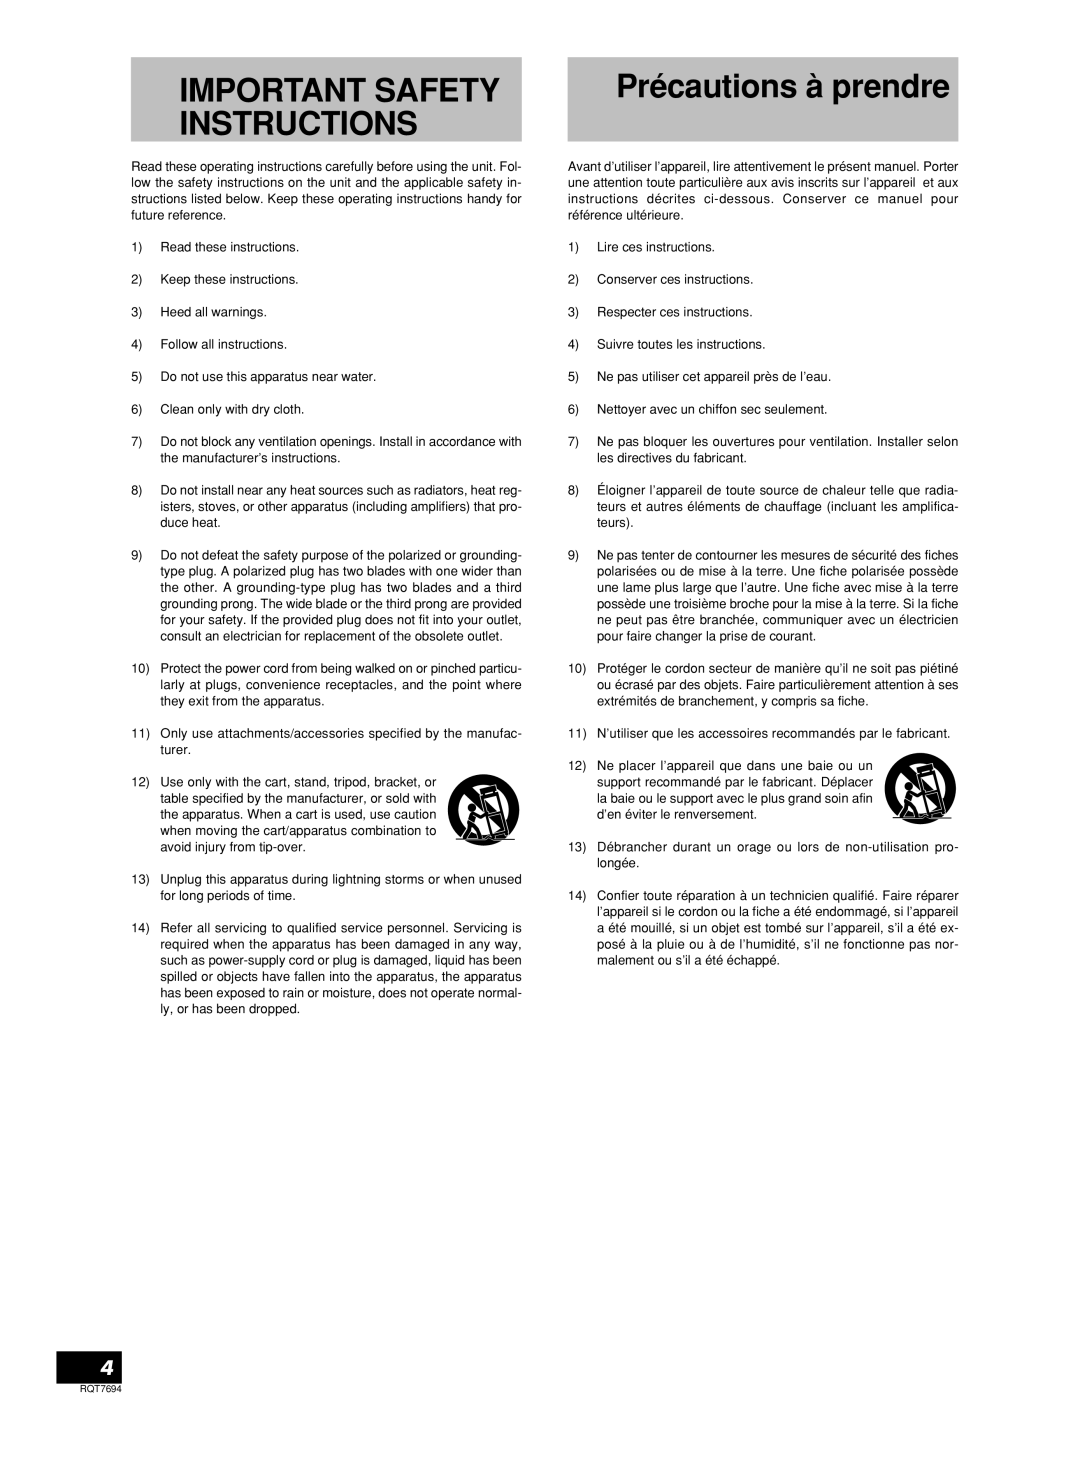 Panasonic SB-TP70 manuel dutilisation Précautions à prendre, Important Safety Instructions 